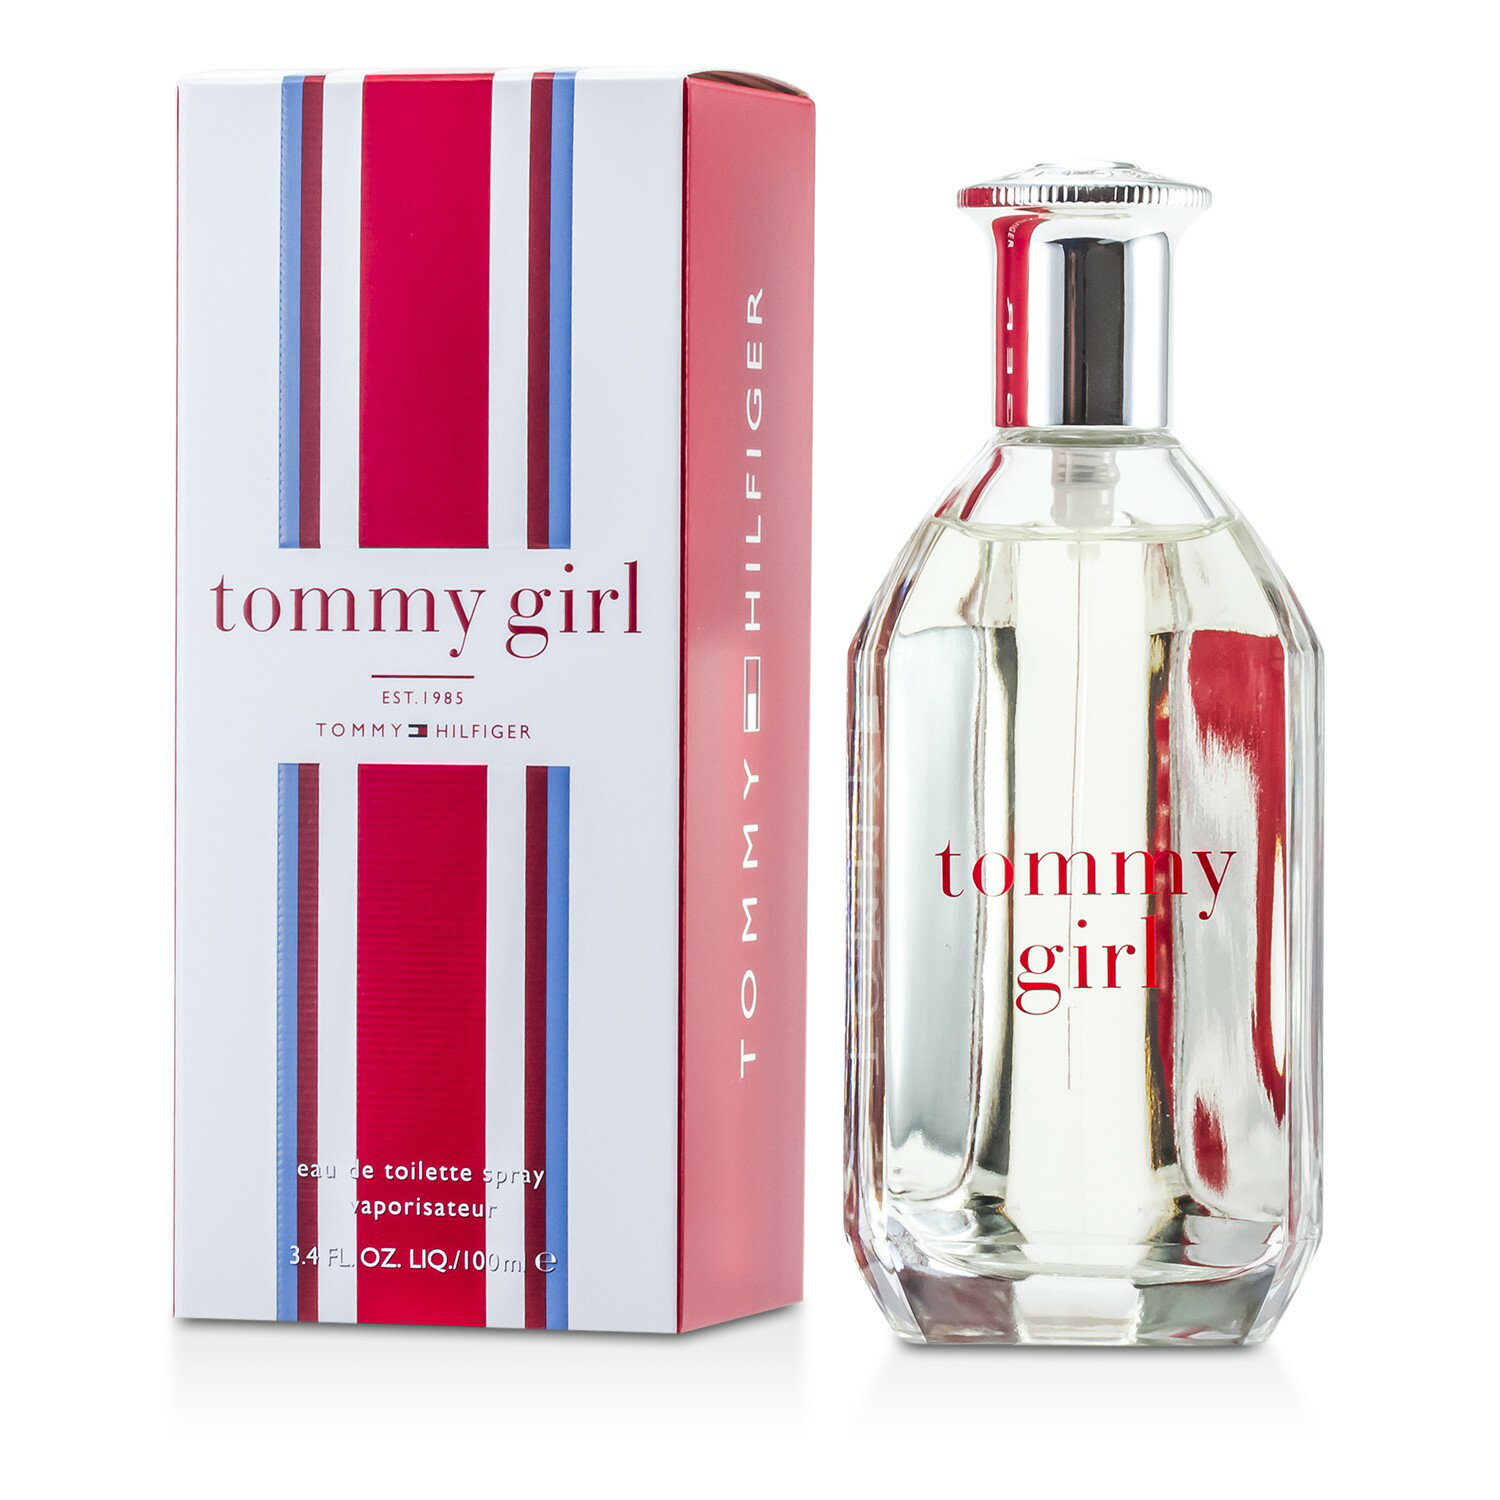 湯米希爾費格 Tommy Hilfiger - Tommy Girl Cologne 女性古龍水(噴式)